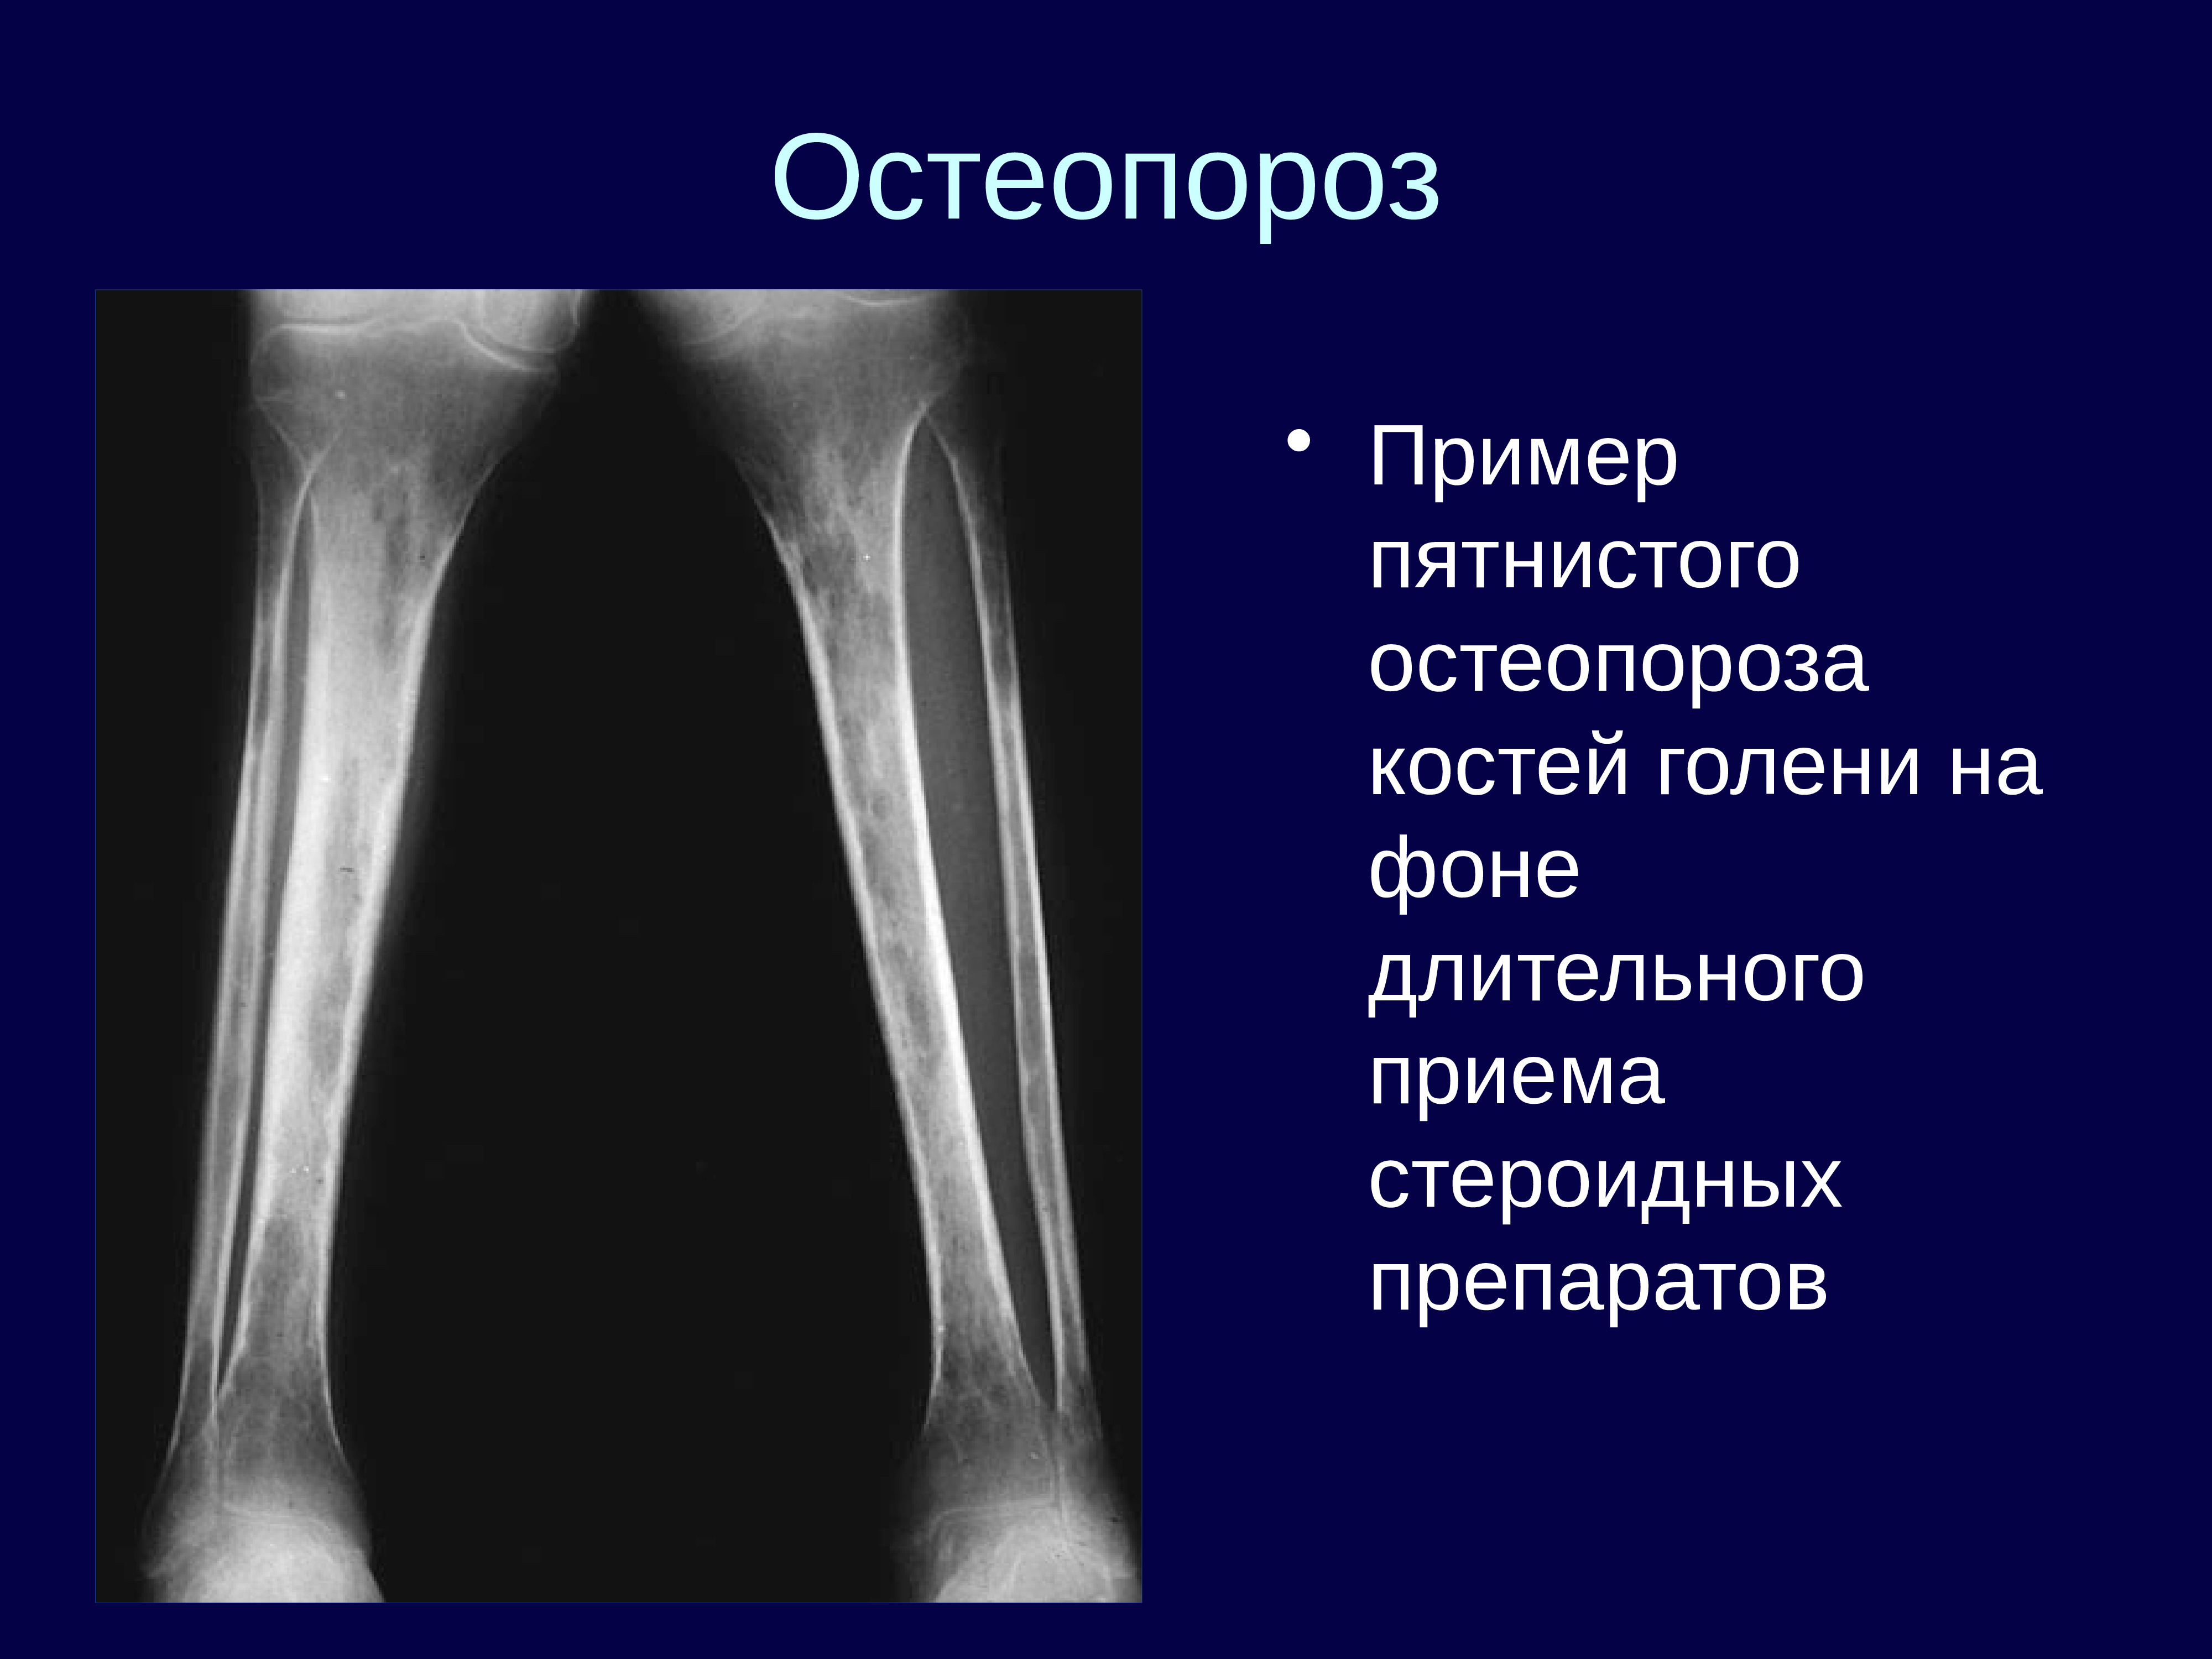 Структурные изменения костей. Остеопороз лучевая диагностика костно-суставной системы. Остеопороз лучевых костей. Пятнистый остеопороз костей рентген. Посттравматический остеопороз бедренной кости.